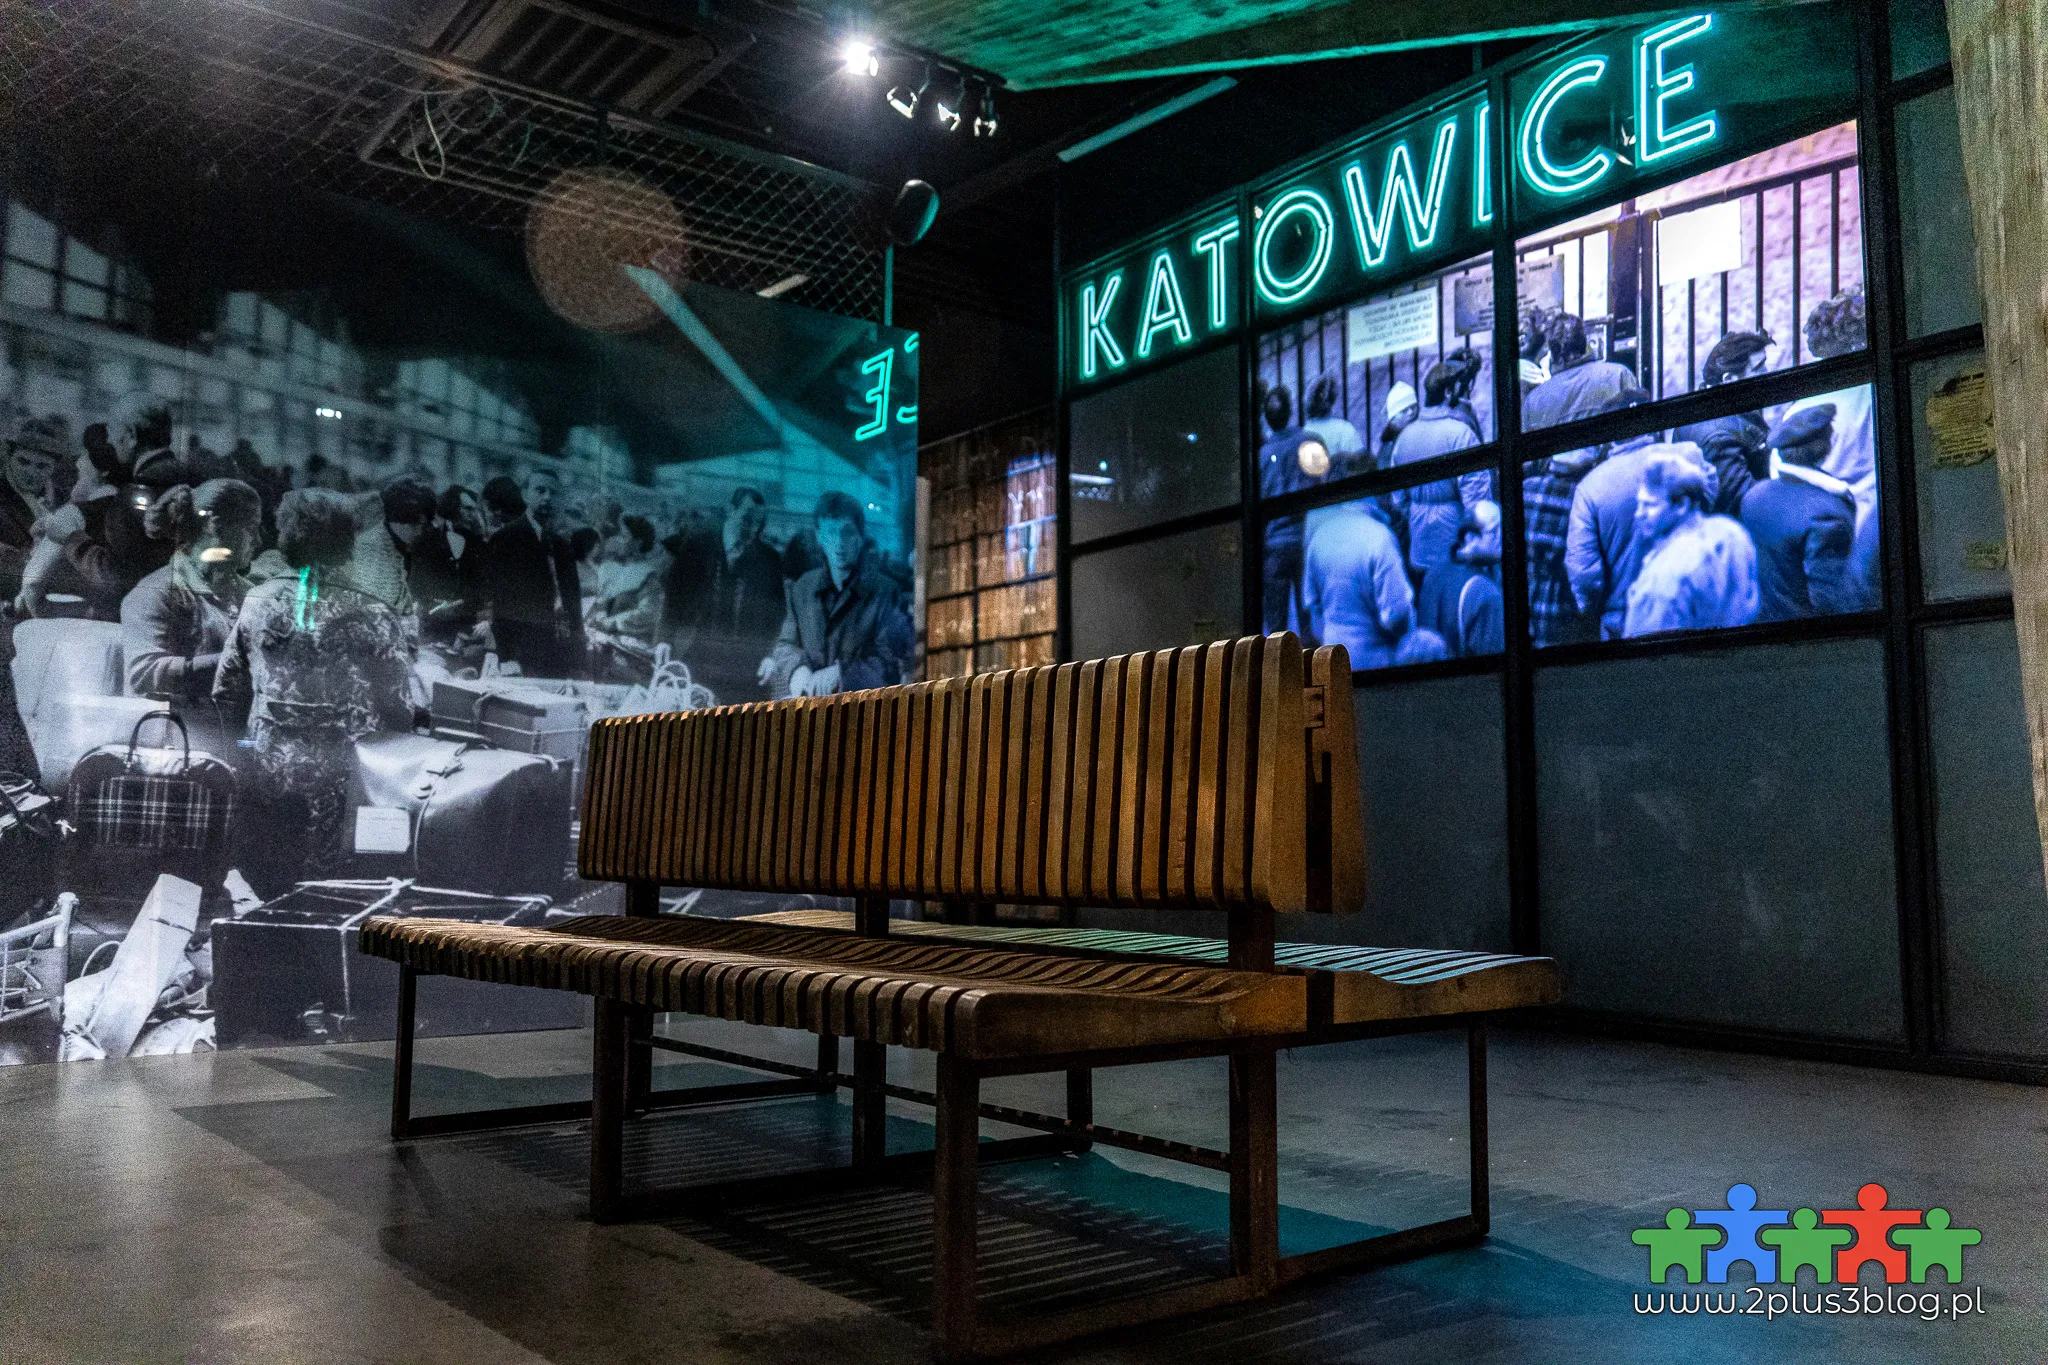 Nowoczesna i multimedialna wystawa stała Śląskiego Centrum Wolności i Solidarności w Katowicach to jedna z najciekawszych wystaw muzealnych na Śląsku!